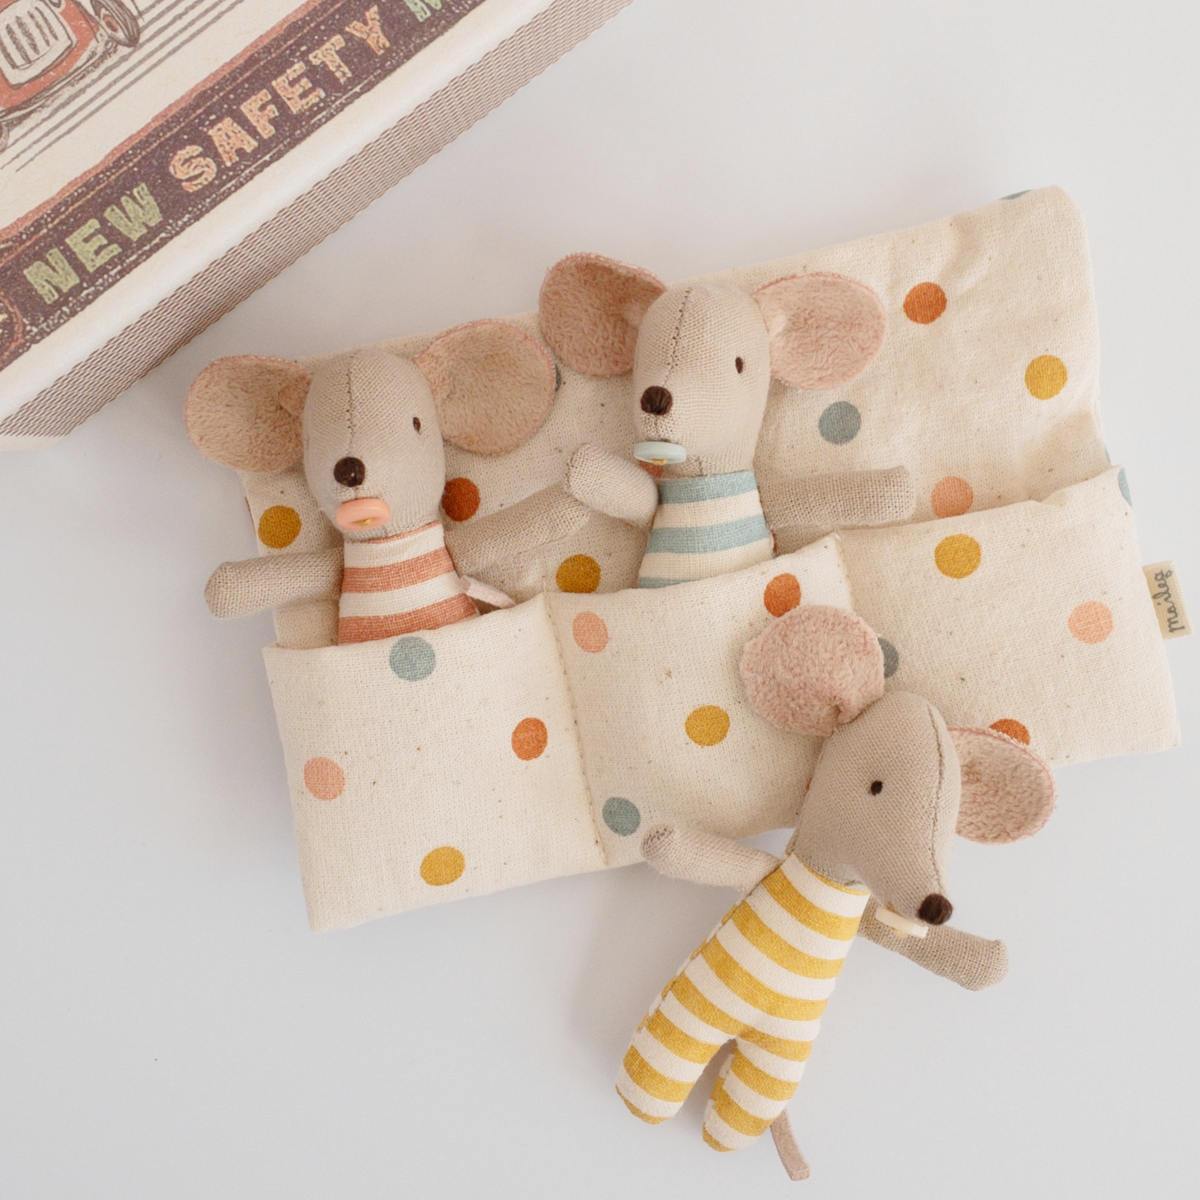 Triplés Souris Maileg : bébés souris avec leur tétine dans leur boîte d\'allumettes